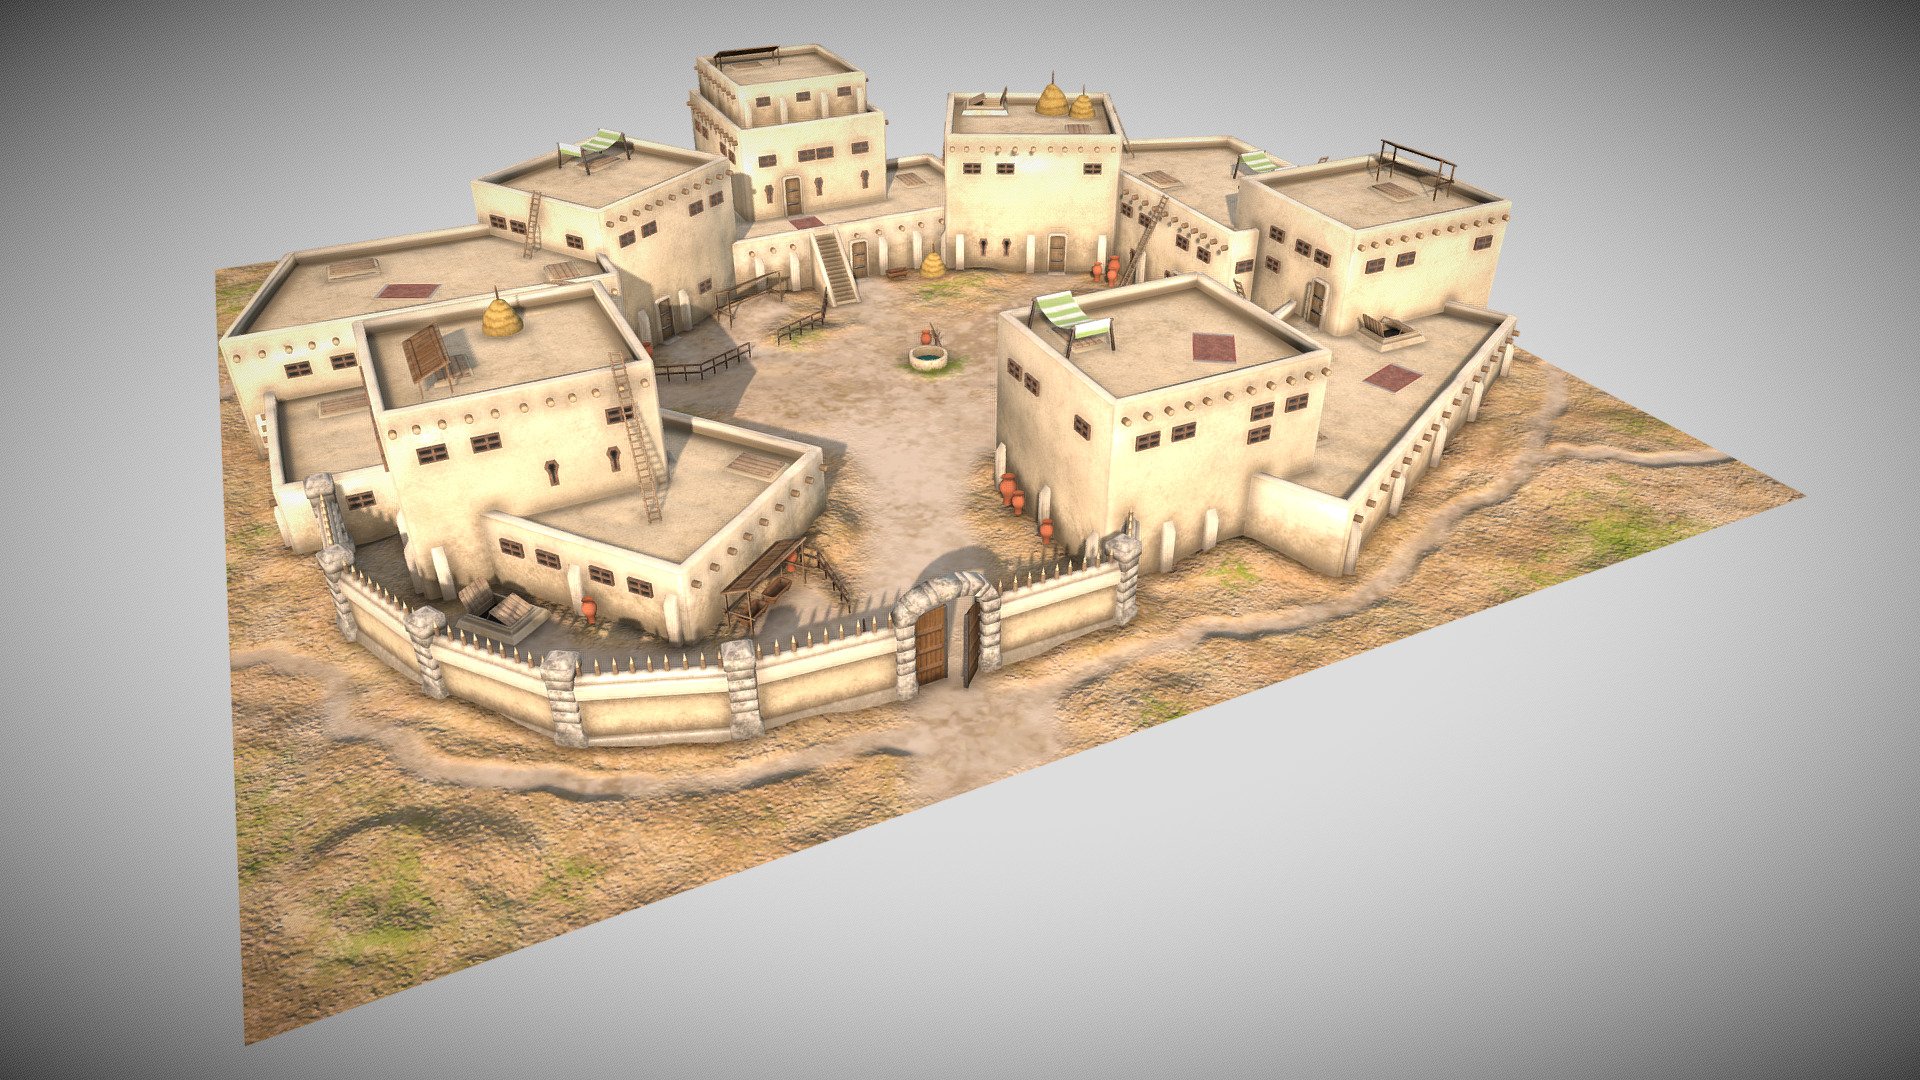 Little desert town, original concept inspired by neolithic settlement of Çatalhöyük

Modeling &amp; UV mapping: Blender + 3DCoat
Texturing: Substance Painter - Desert Town - 3D model by Niko (@nikosstuff) 3d model